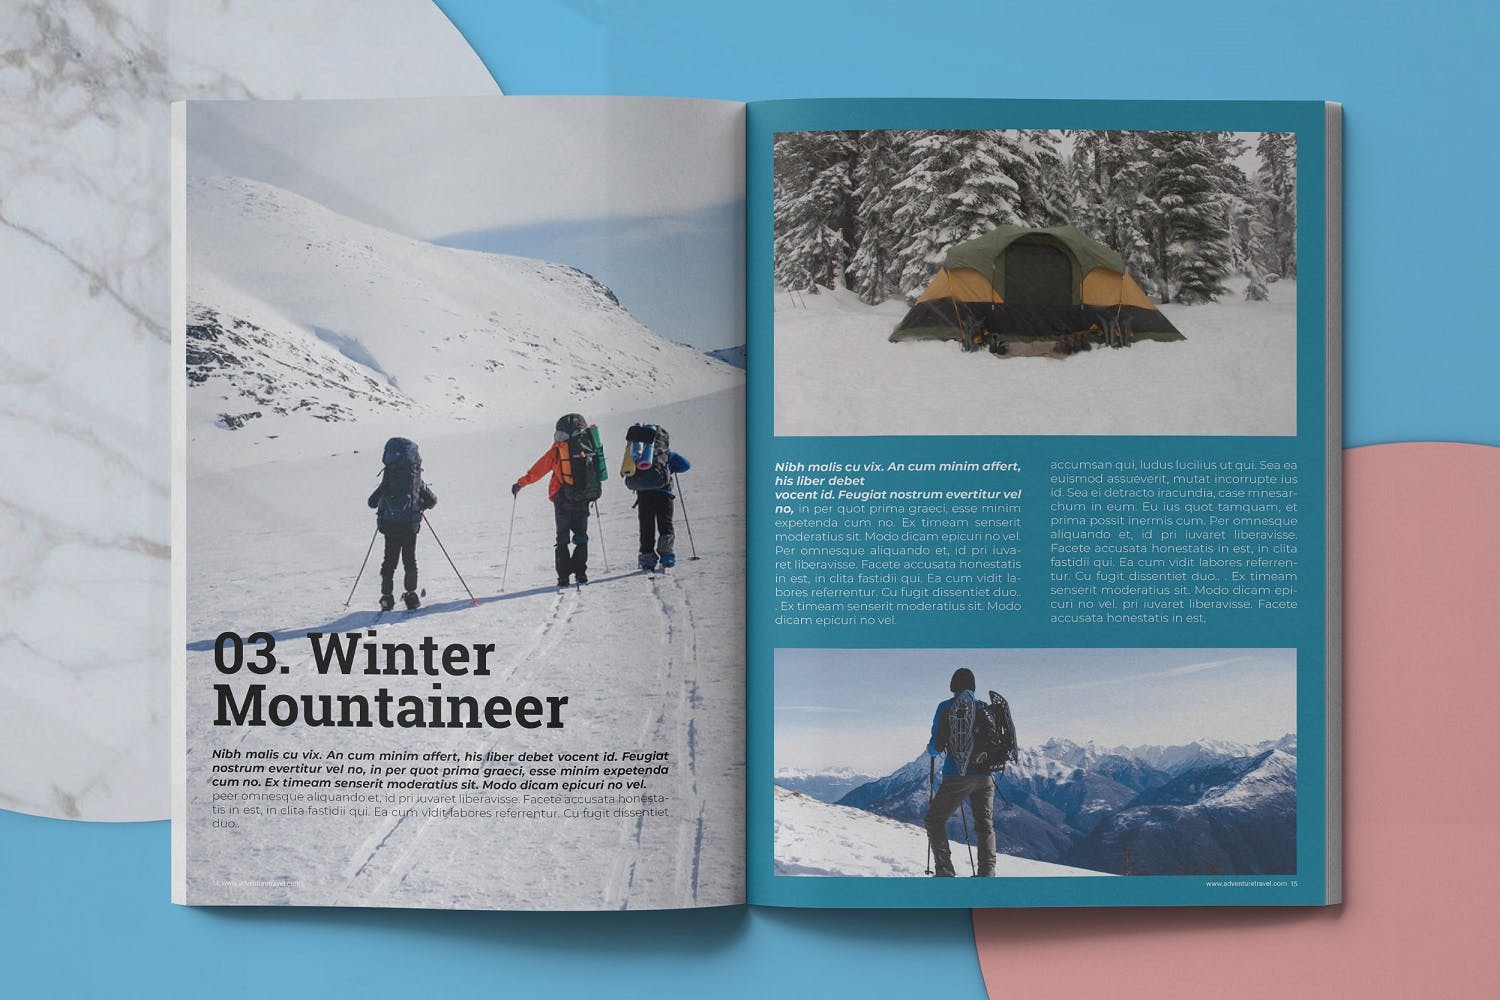 冒险旅行主题16设计网精选杂志排版设计模板 Adventure Travel Magazine Template插图(7)